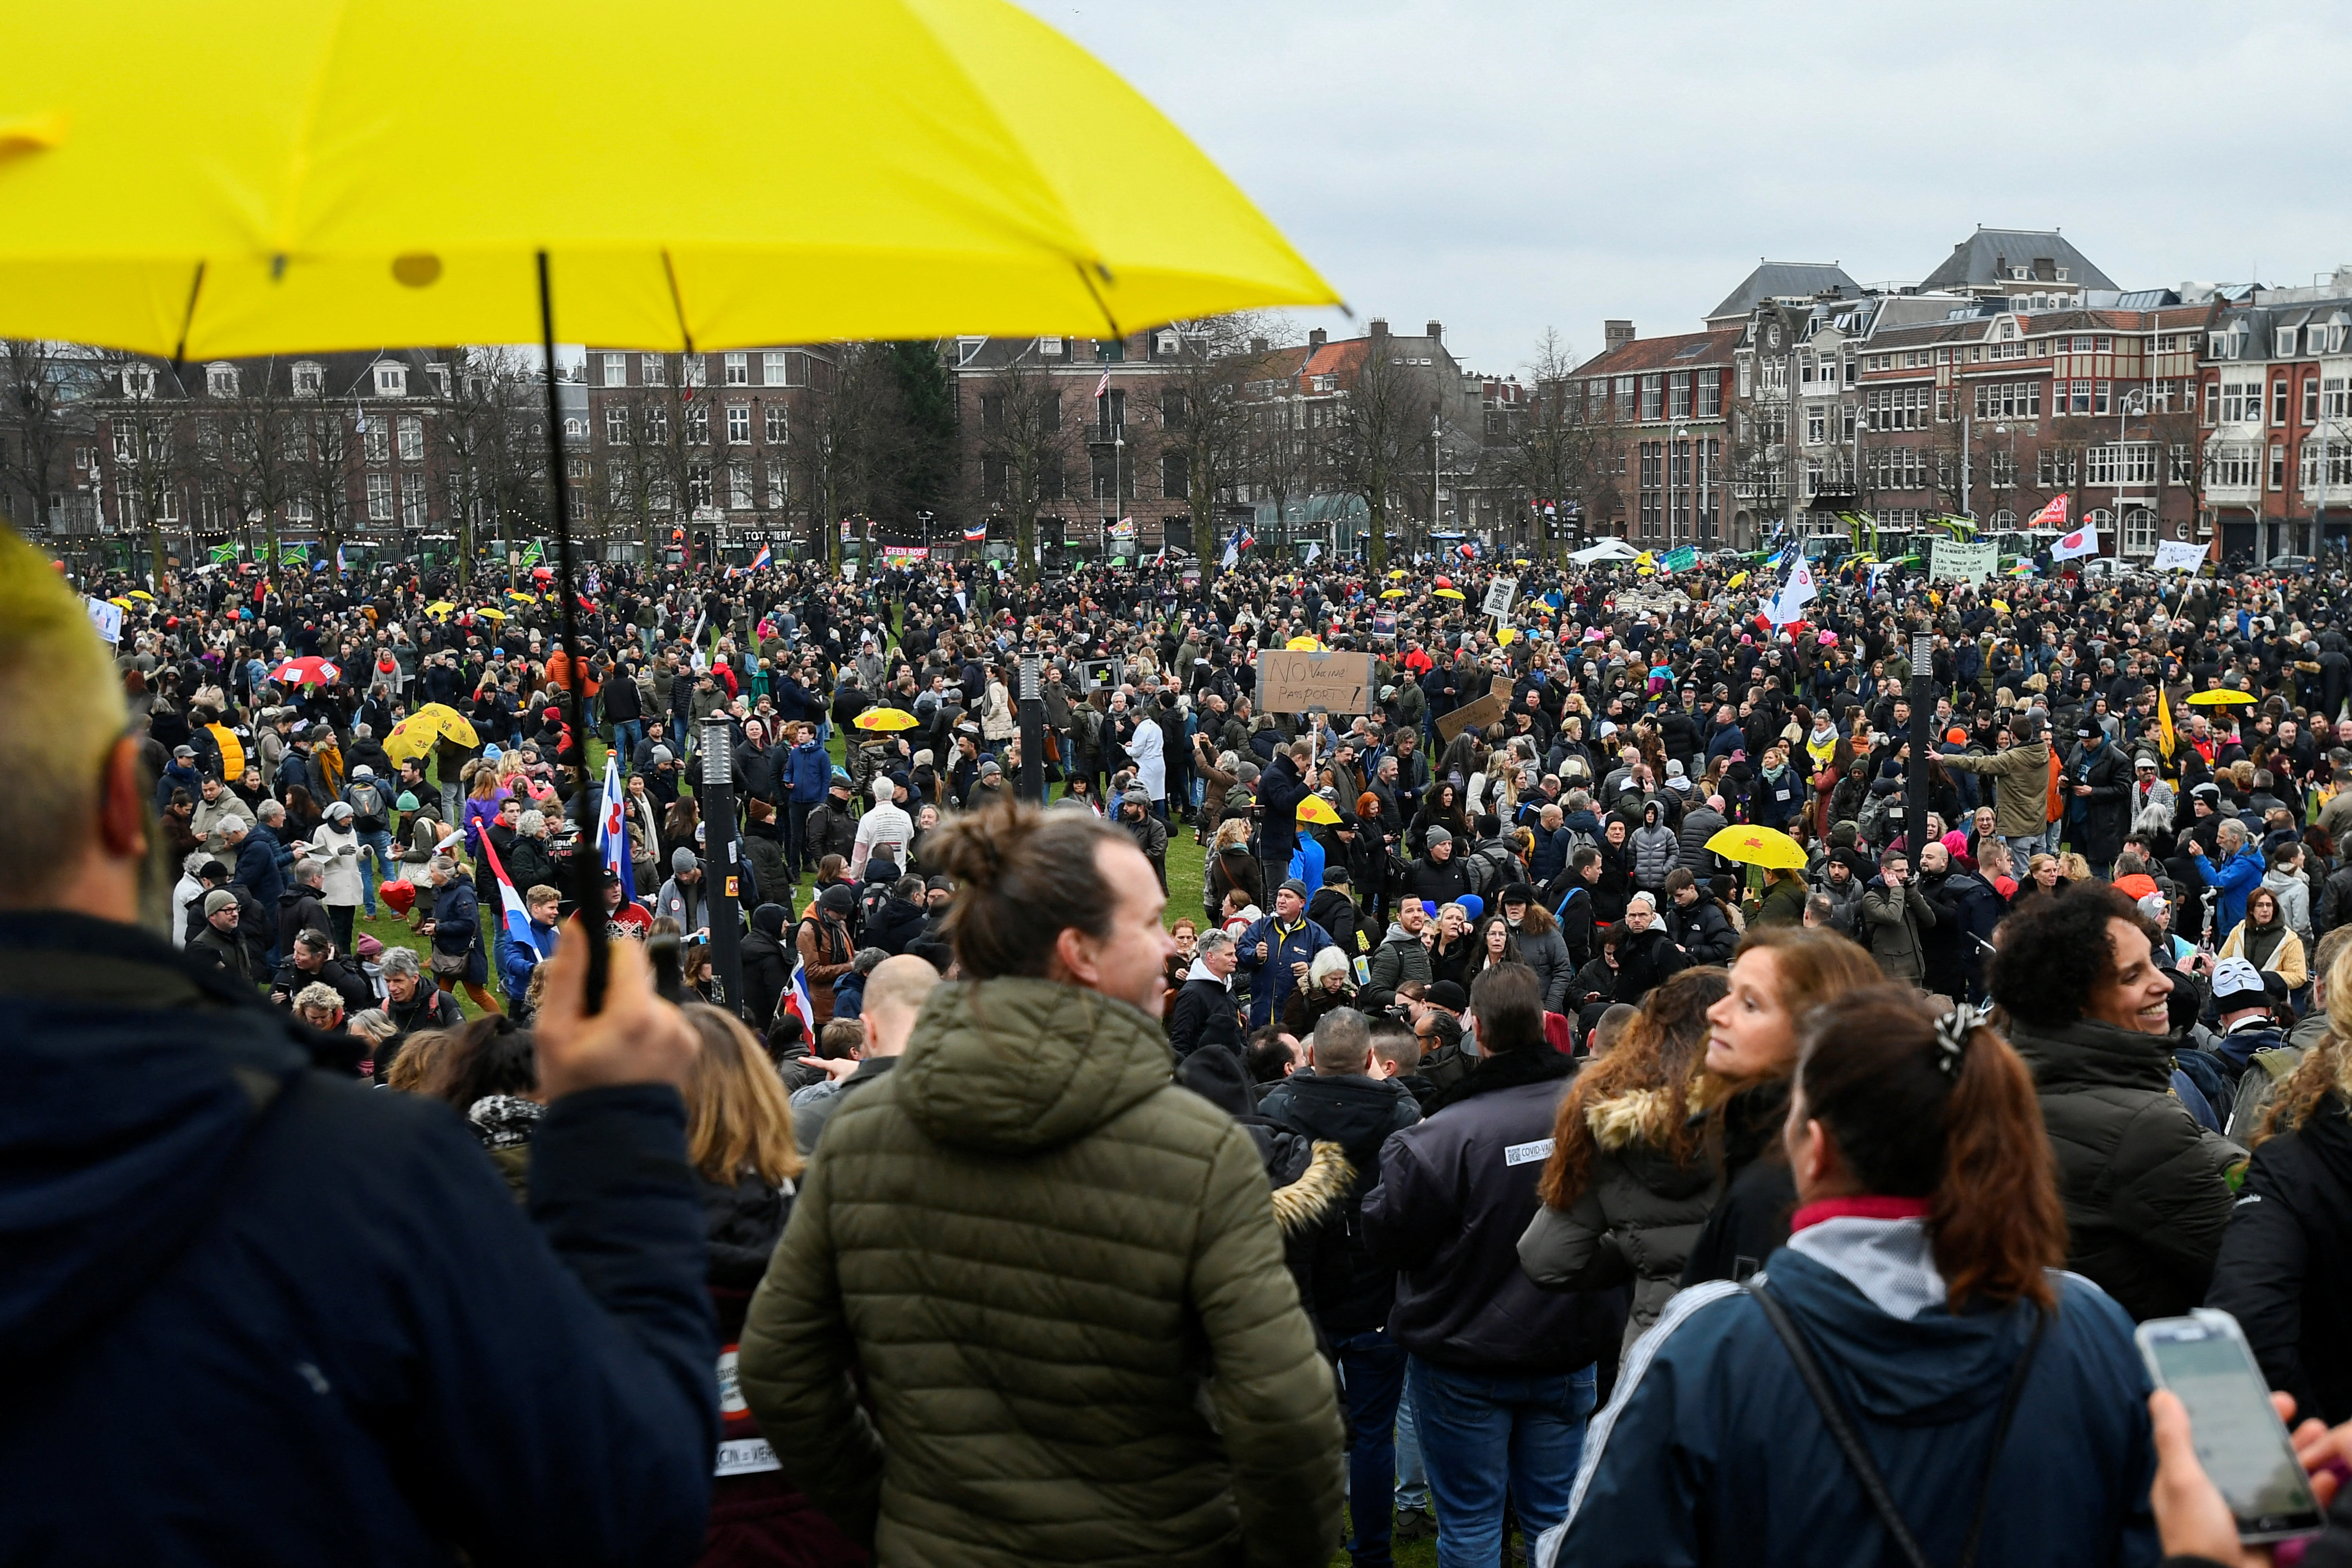 Διαδηλωτές συμμετέχουν σε μια διαμαρτυρία ενάντια στους περιορισμούς της ολλανδικής κυβέρνησης που επιβλήθηκαν για τον περιορισμό της εξάπλωσης της νόσου του κοροναϊού (COVID-19), στο Άμστερνταμ, Ολλανδία, 16 Ιανουαρίου 2022. REUTERS/Piroschka van de Wouw